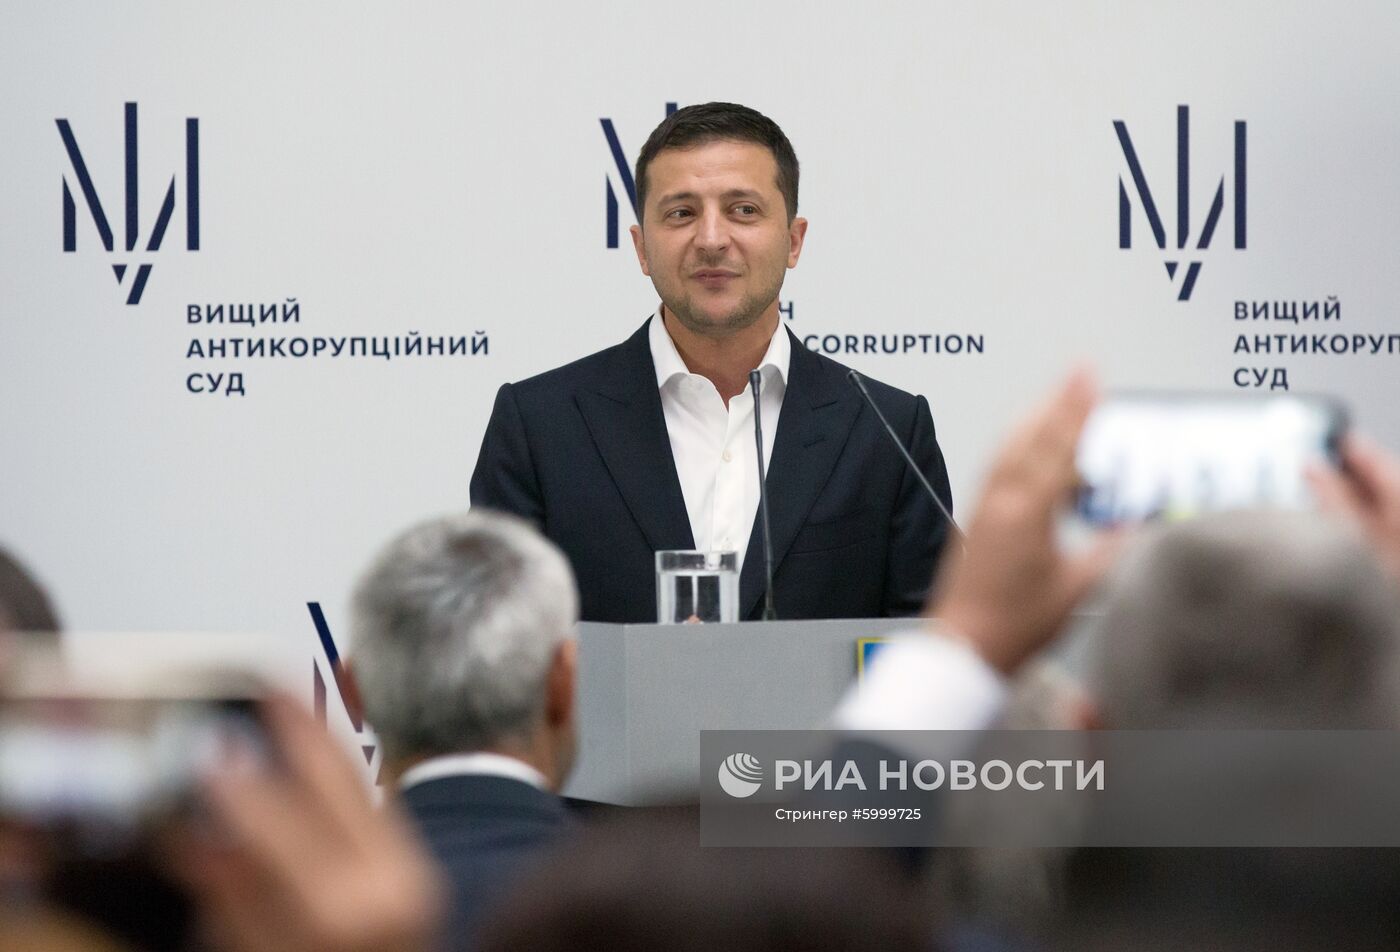 Начало работы Высшего антикоррупционного суда Украины